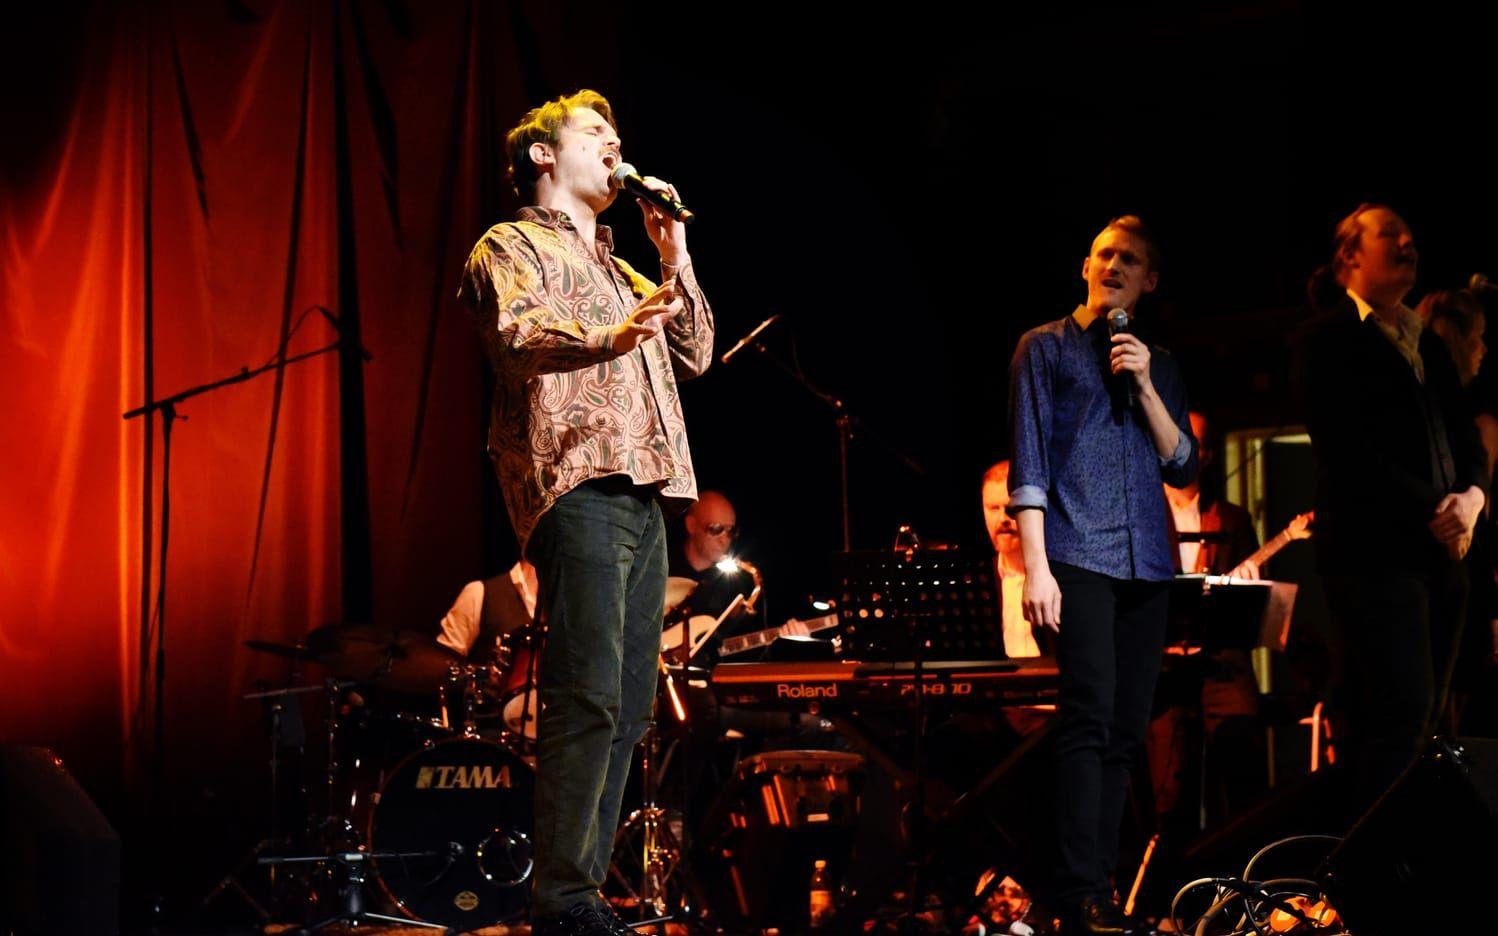 Carl Bäckersten (till vänster) och Jim Carlsson tolkade tillsammans Elton Johns "Don’t let the sun go down on me”. Bild: Maria Åkesson